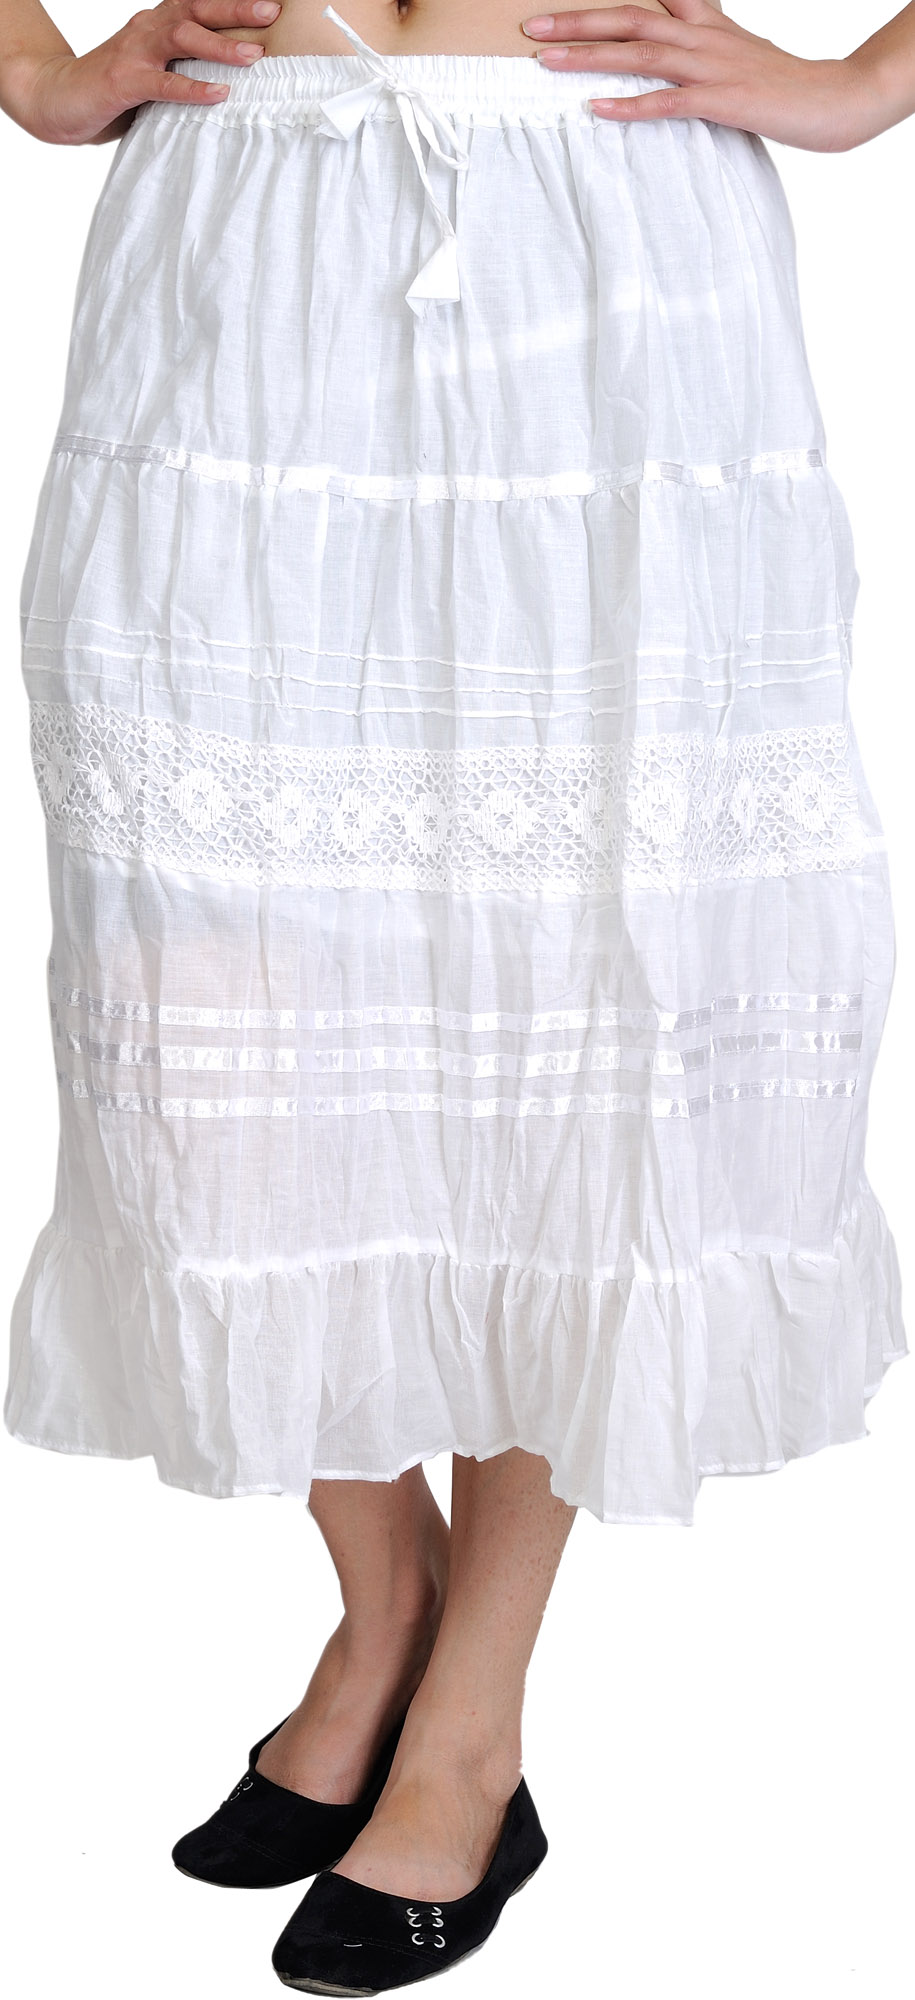 Chiara Ferragni Outlet: skirt for girl - White | Chiara Ferragni skirt  51A7021250 online at GIGLIO.COM